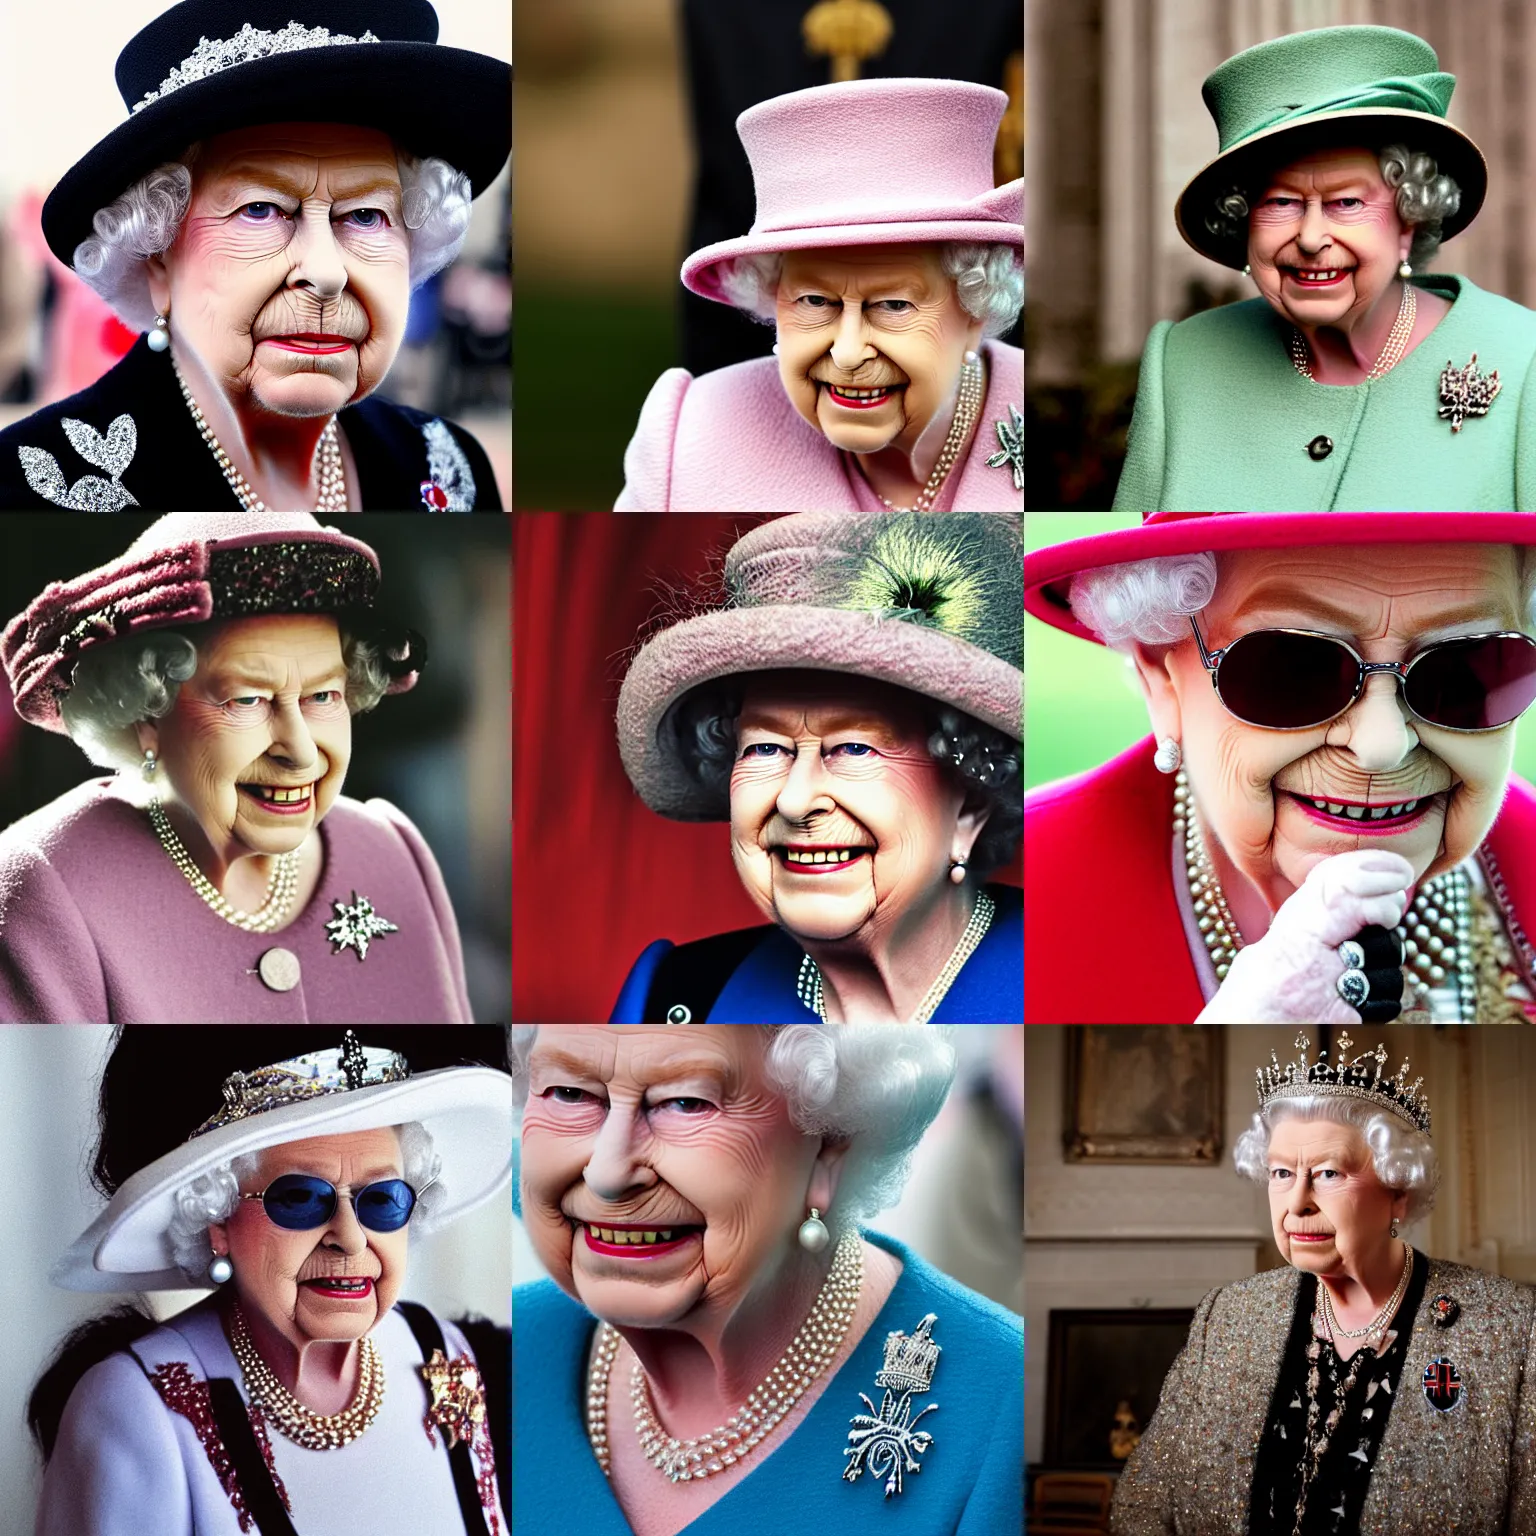 Prompt: Queen Elizabeth as Ozzy Osbourne, portrait photograph, depth of field, bokeh